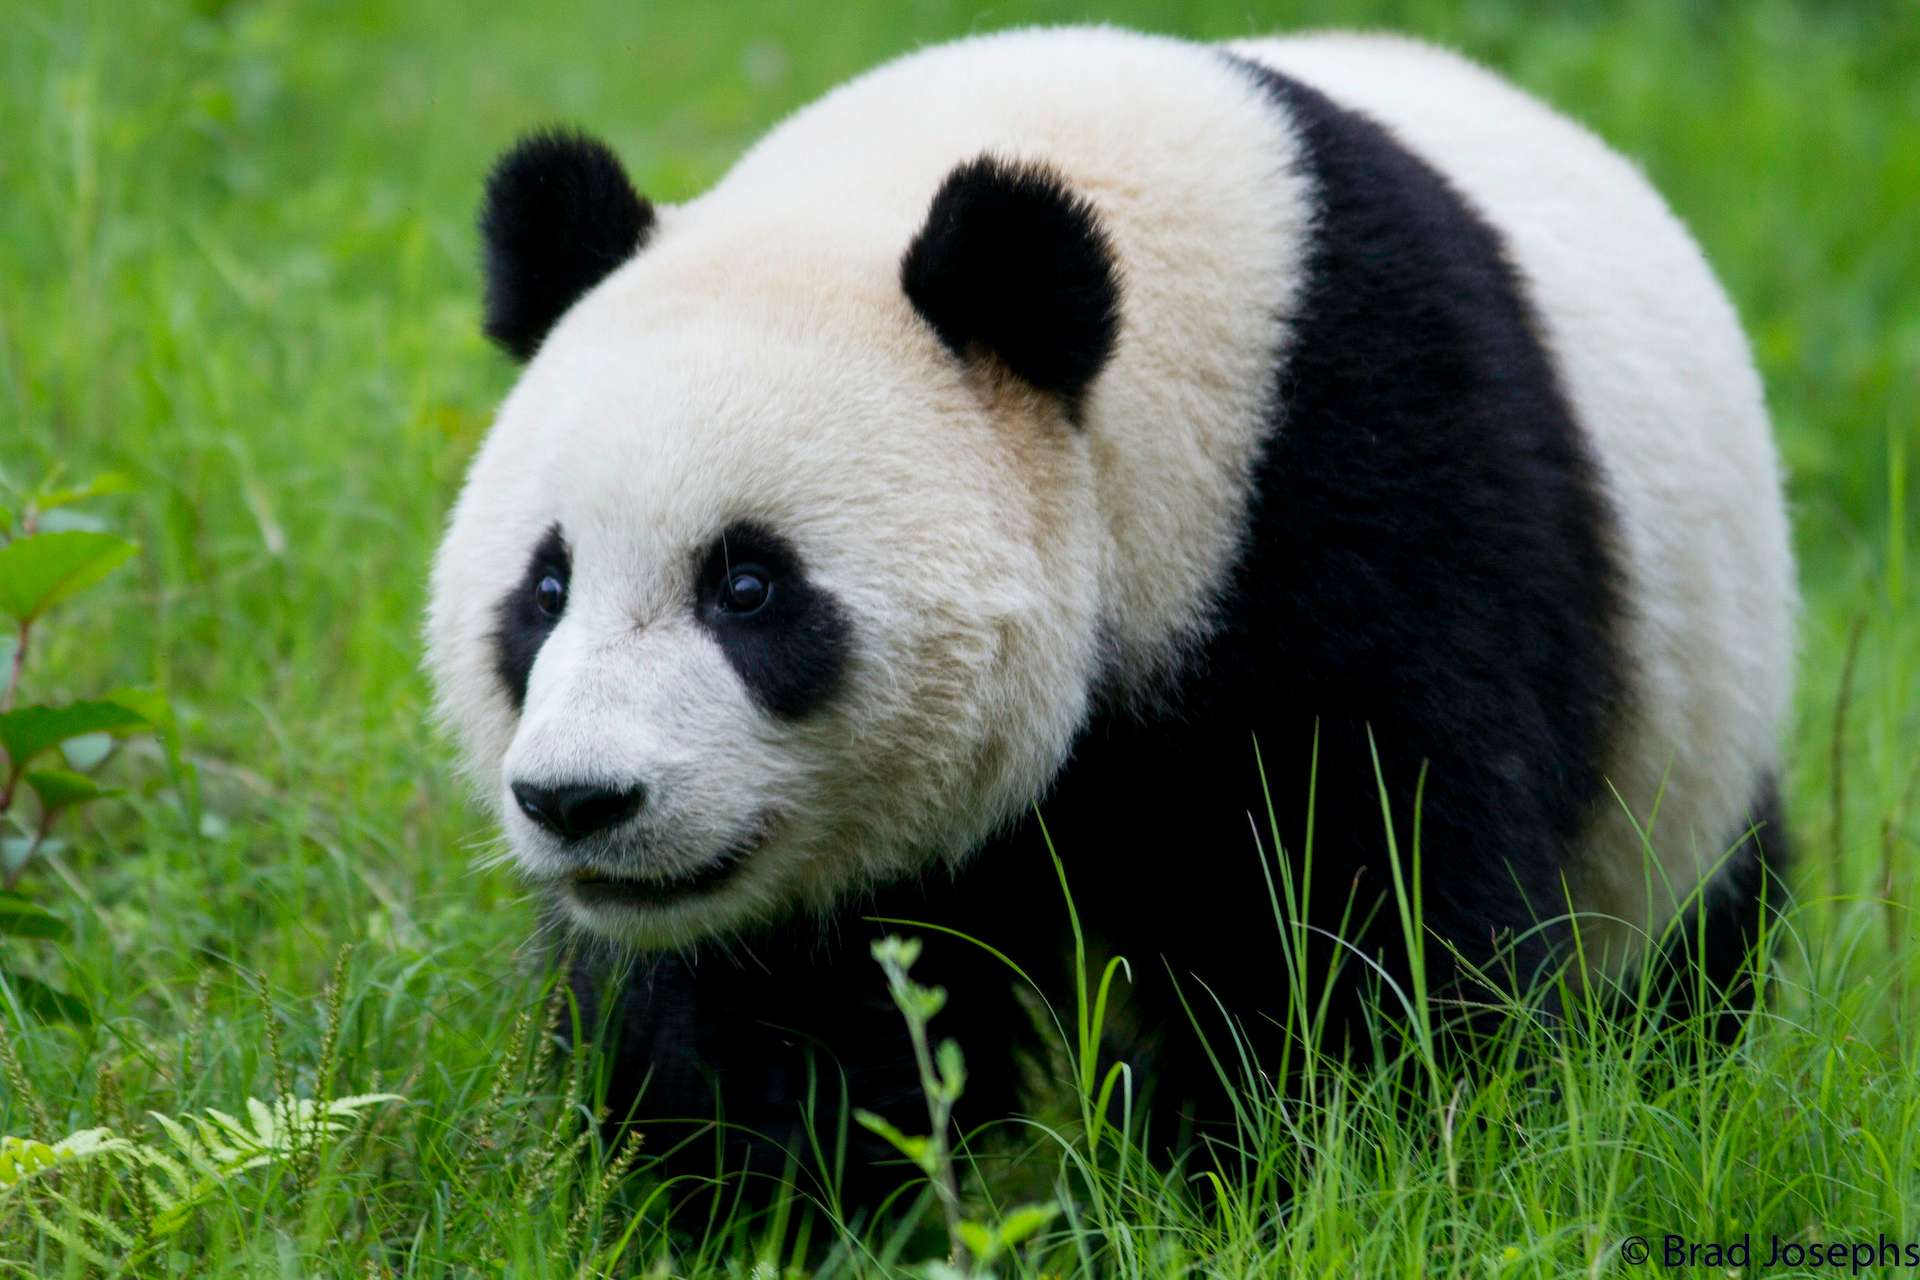 A panda in China.